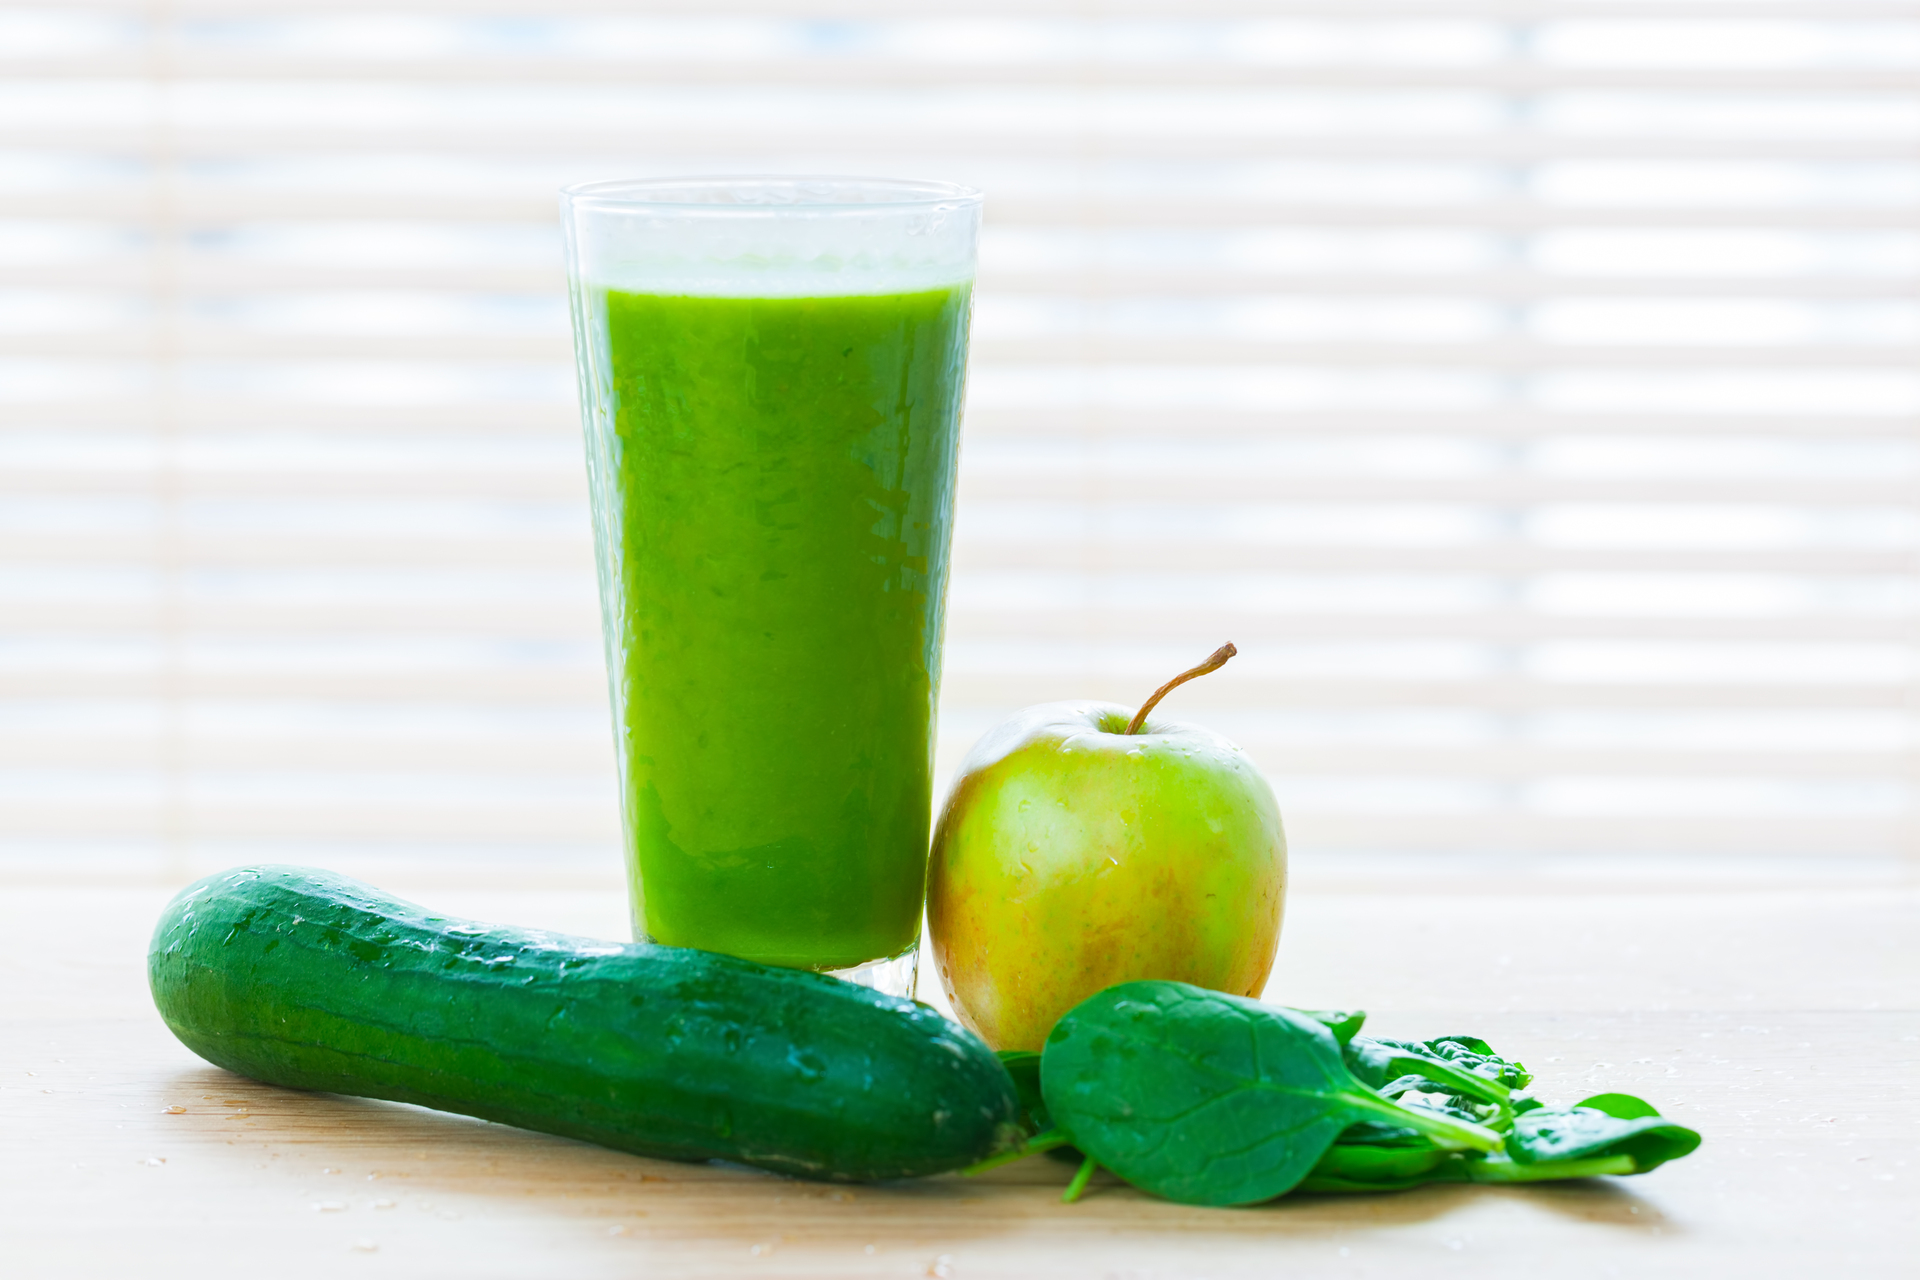 Na tym obrazku widać szklankę zawierającą orzeźwiający ielony sok warzywno-owocowy. Sok skomponowany z zielonych warzyw i soczystych owoców prezentuje intensywny kolor i zdrowy wygląd. To nie tylko smaczny napój, ale także pełen witamin i składników odżywczych, który doda energii i odświeży organizm